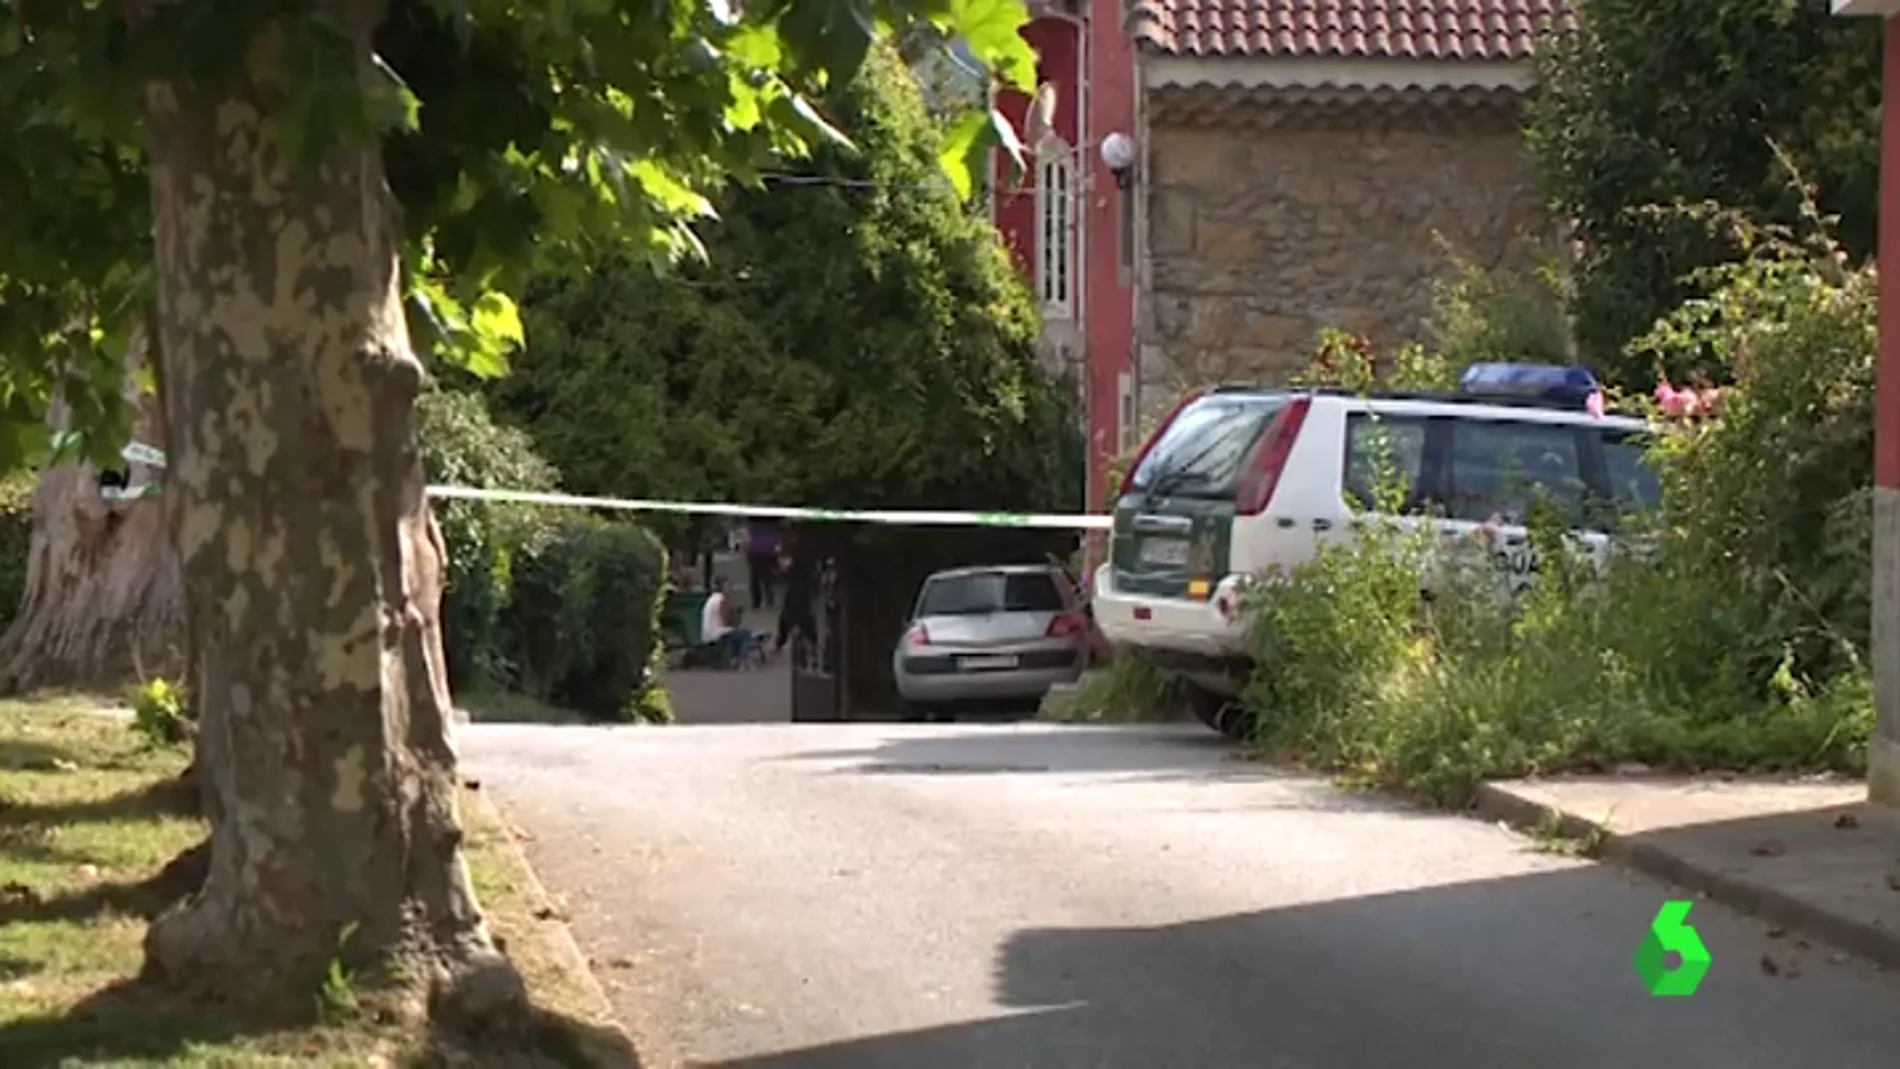  Un niño de 5 años muere ahogado en una granja escuela en Soto del Barco, Asturias 